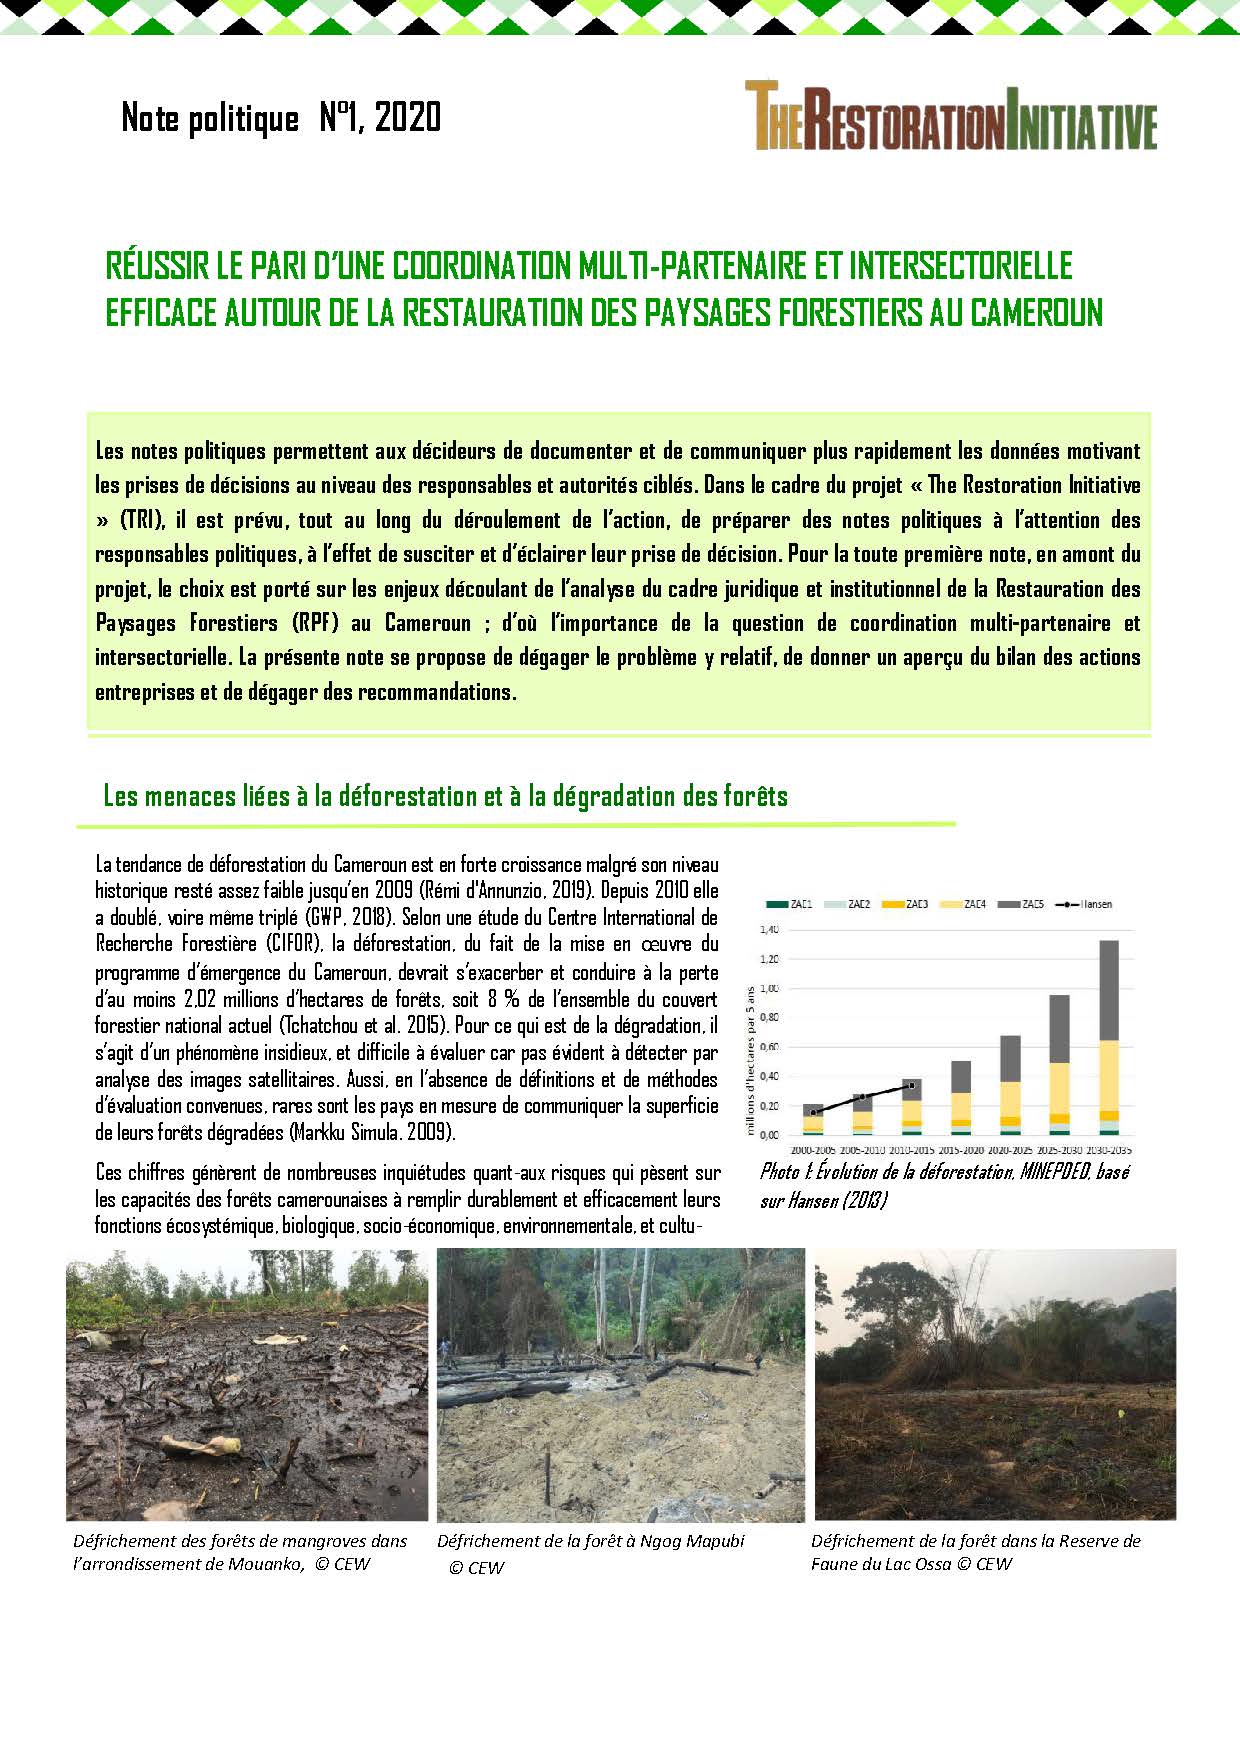 Note politique : Réussir le pari d’une coordination multi-partenaire et intersectorielle efficace autour de la restauration des paysages forestiers au Cameroun